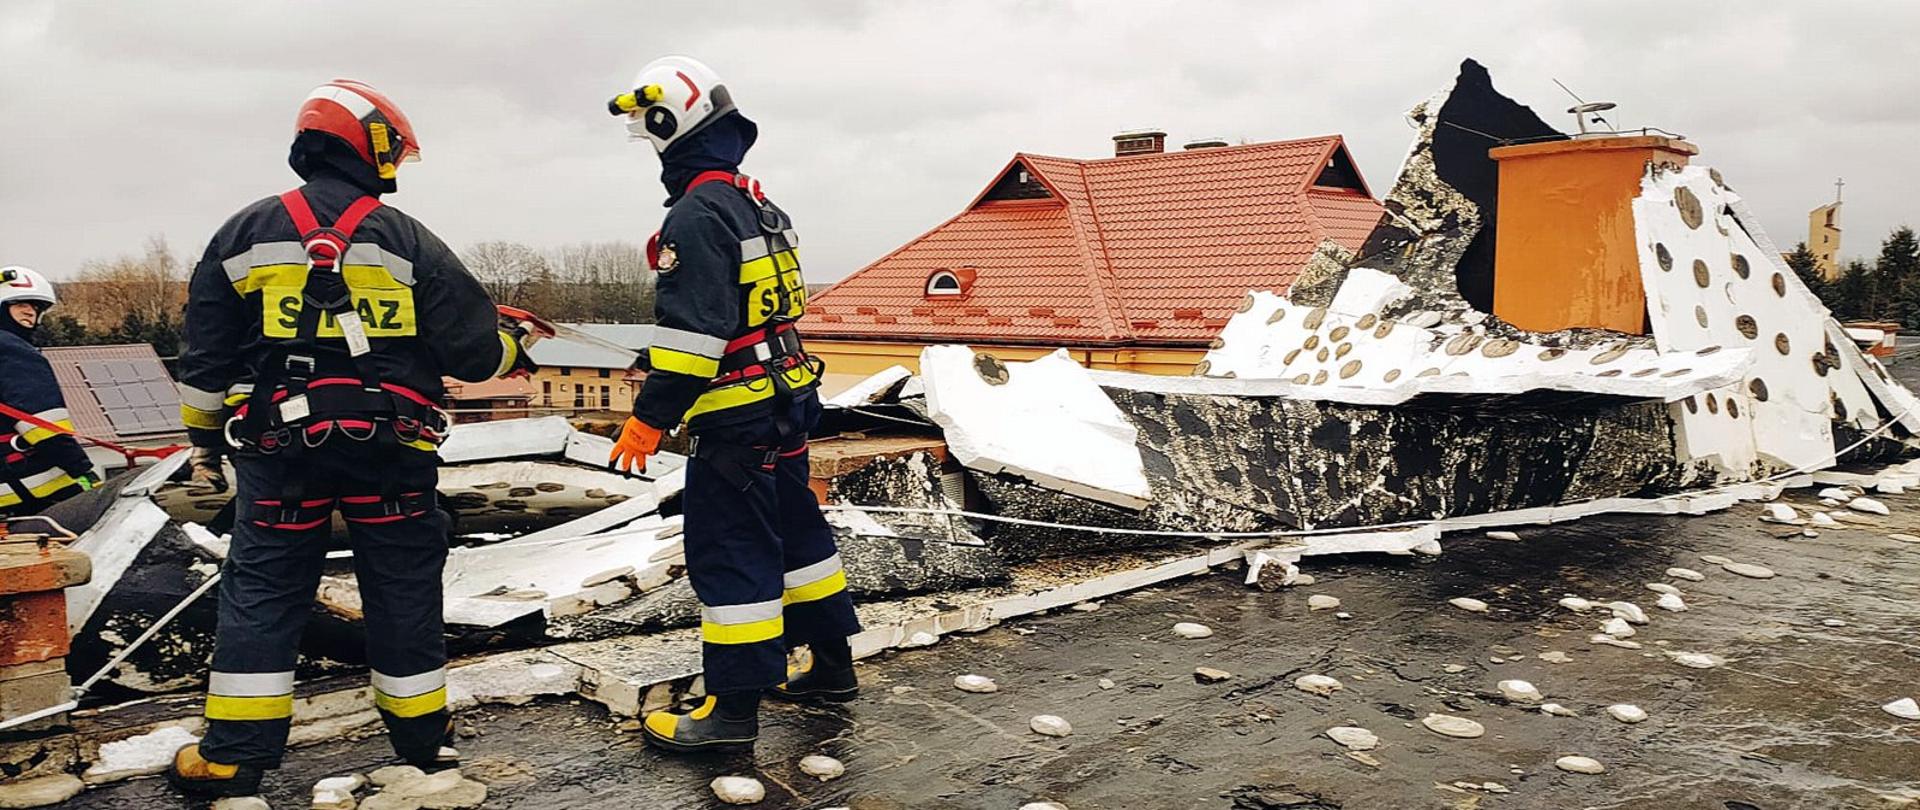 Zdjęcie zrobione na zewnątrz. Na uszkodzonym dachu stoi dwóch strażaków, którzy zabezpieczają uszkodzoną konstrukcję. Strażacy ubrani są ubrania specjalne, szelki oraz są zabezpieczeni linkami asekuracyjnymi. W tle widać zniszczone pokrycie dachowe. 